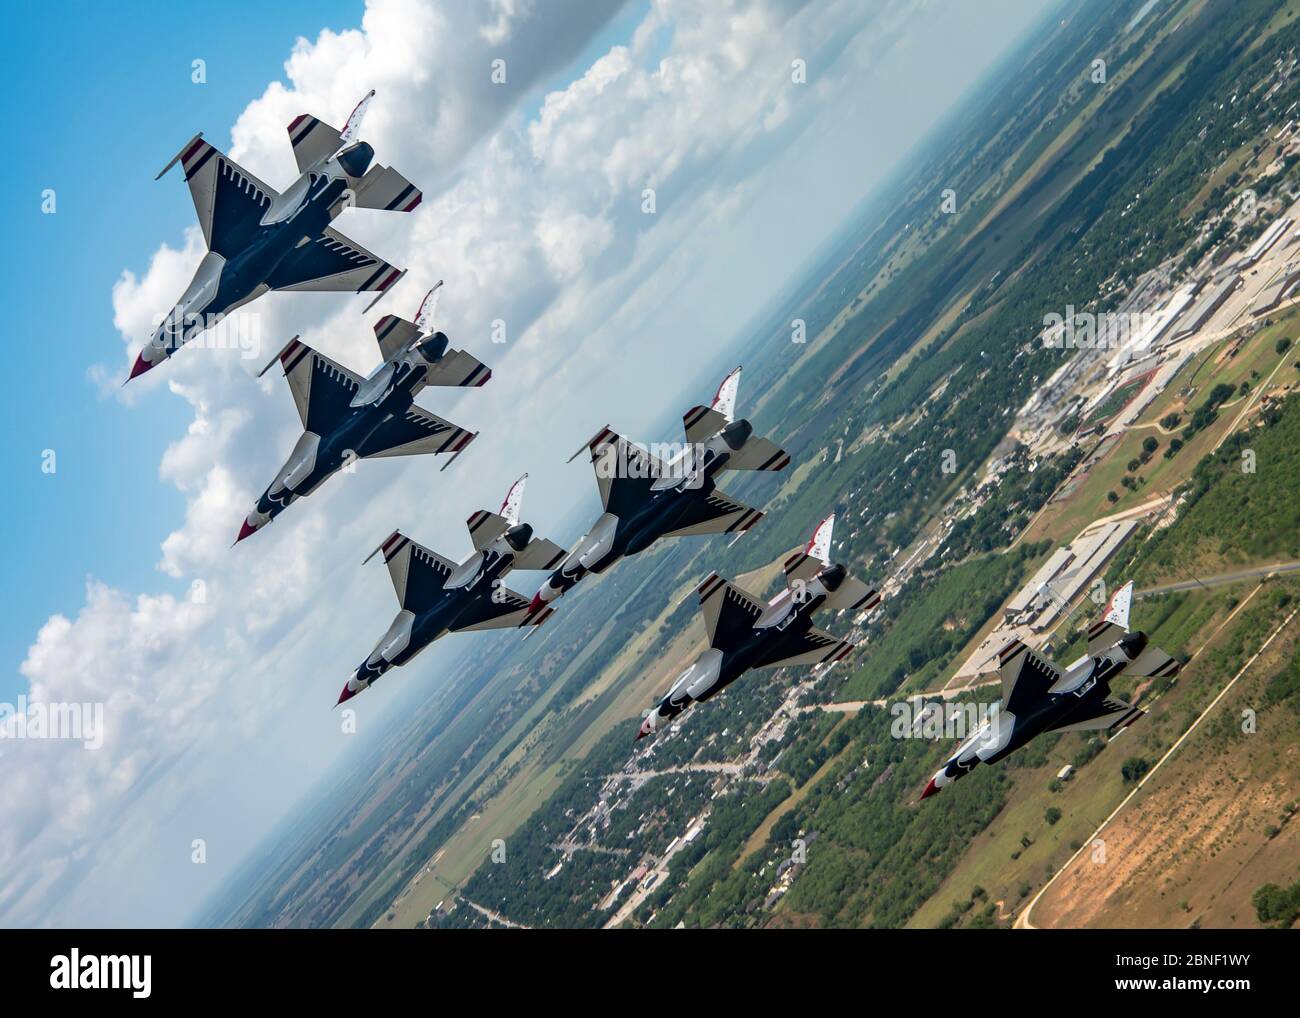 Le 13 mai 2020, le « Thunderbirds », Escadron de démonstration aérienne de la Force aérienne des États-Unis, survole San Antonio. Le survol a été une partie de l'Amérique fort; un salut collaboratif de l'Armée de l'Air et de la Marine pour reconnaître les travailleurs de la santé, les premiers intervenants, les militaires et d'autres personnels essentiels tout en restant en solidarité avec tous les Américains pendant la pandémie COVID-19. (ÉTATS-UNIS Photo de la Force aérienne/Sgt. Cory avec bague) Banque D'Images